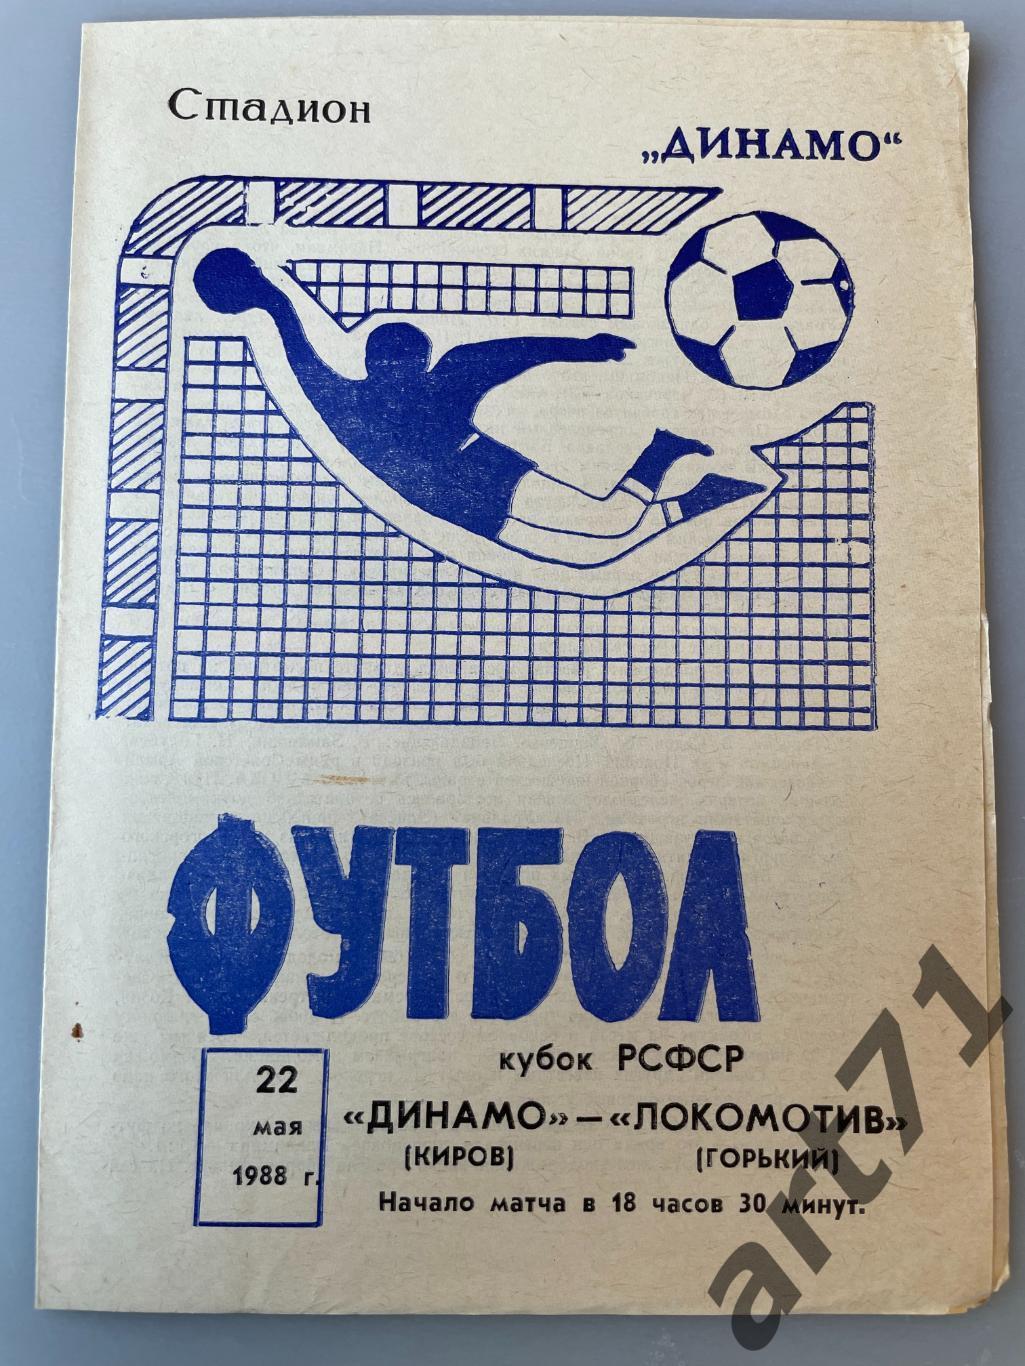 Динамо Киров - Локомотив Горький 1988 кубок РСФСР